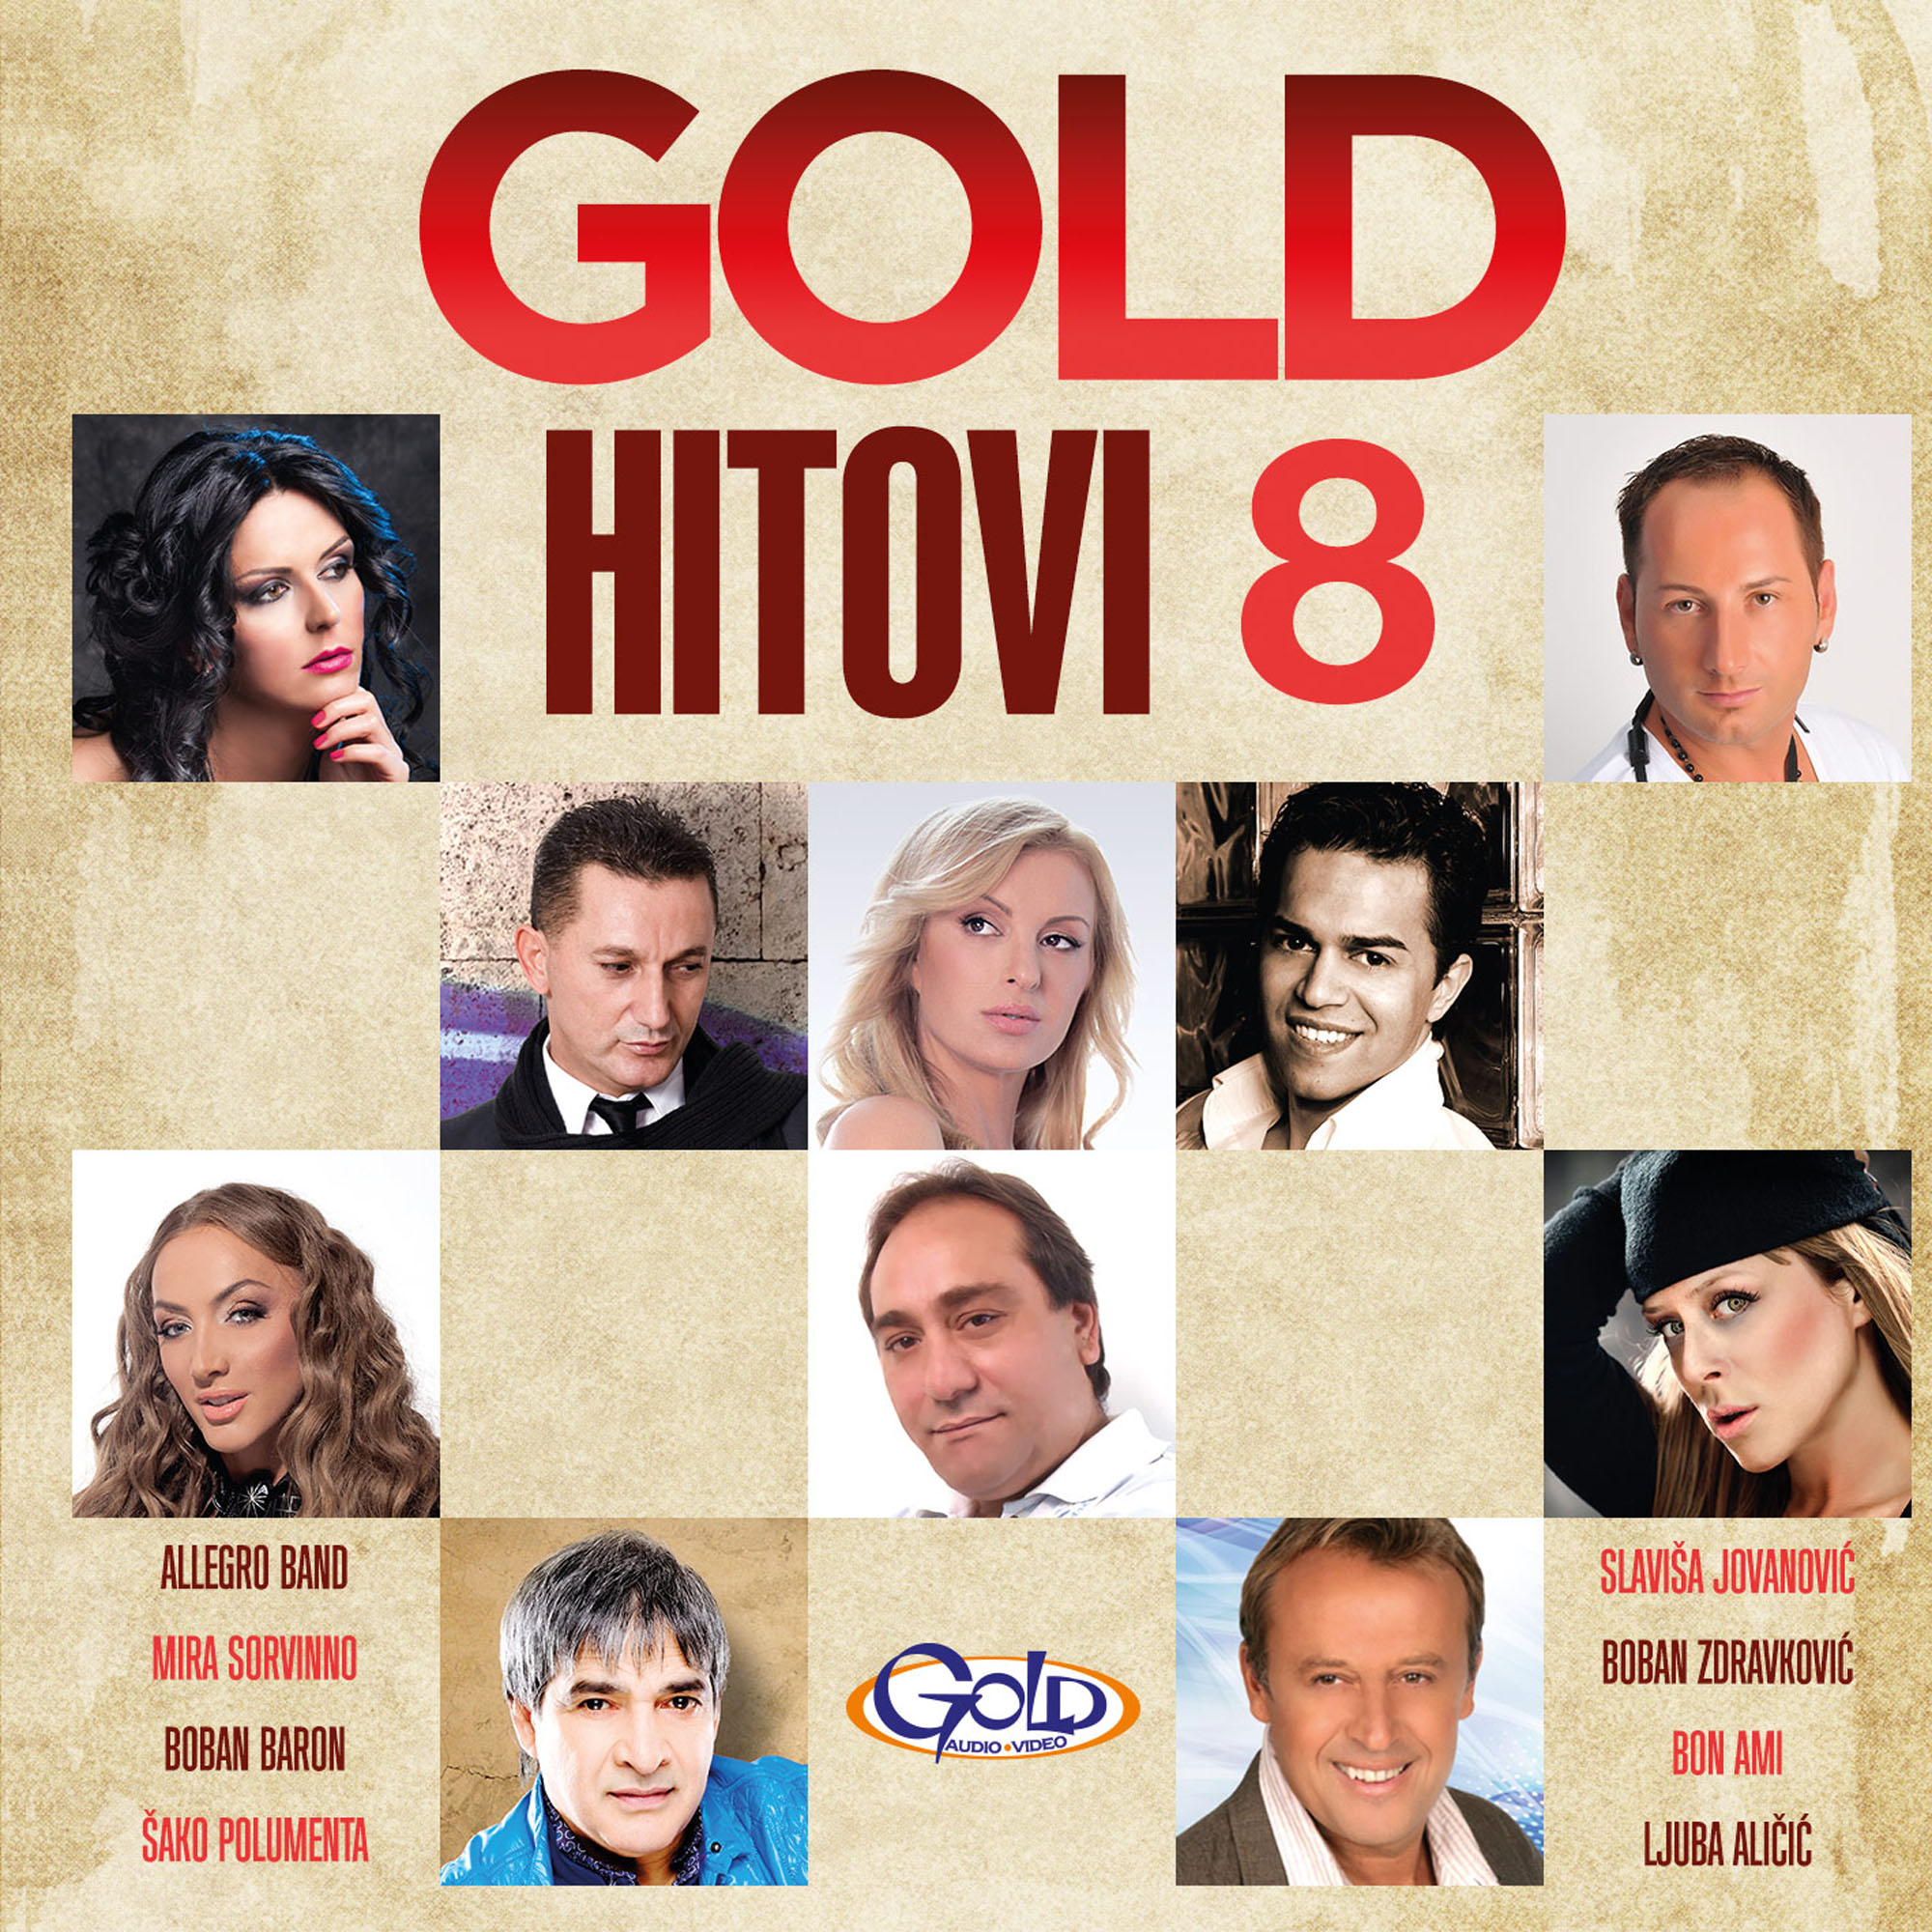 GOLD HITOVI 8